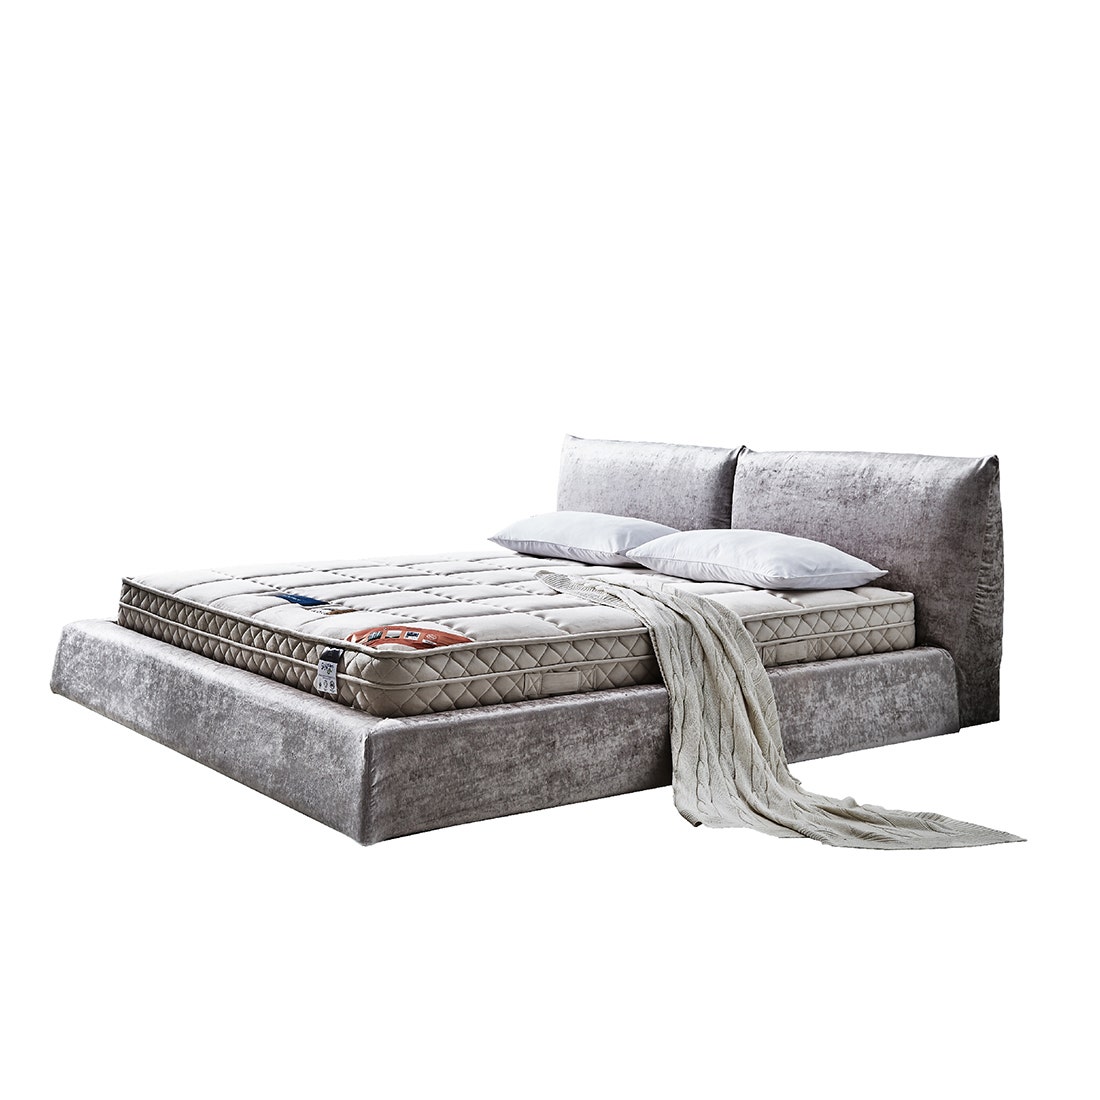 39004966-mattress-bedding-mattresses-spring-mattresses-02